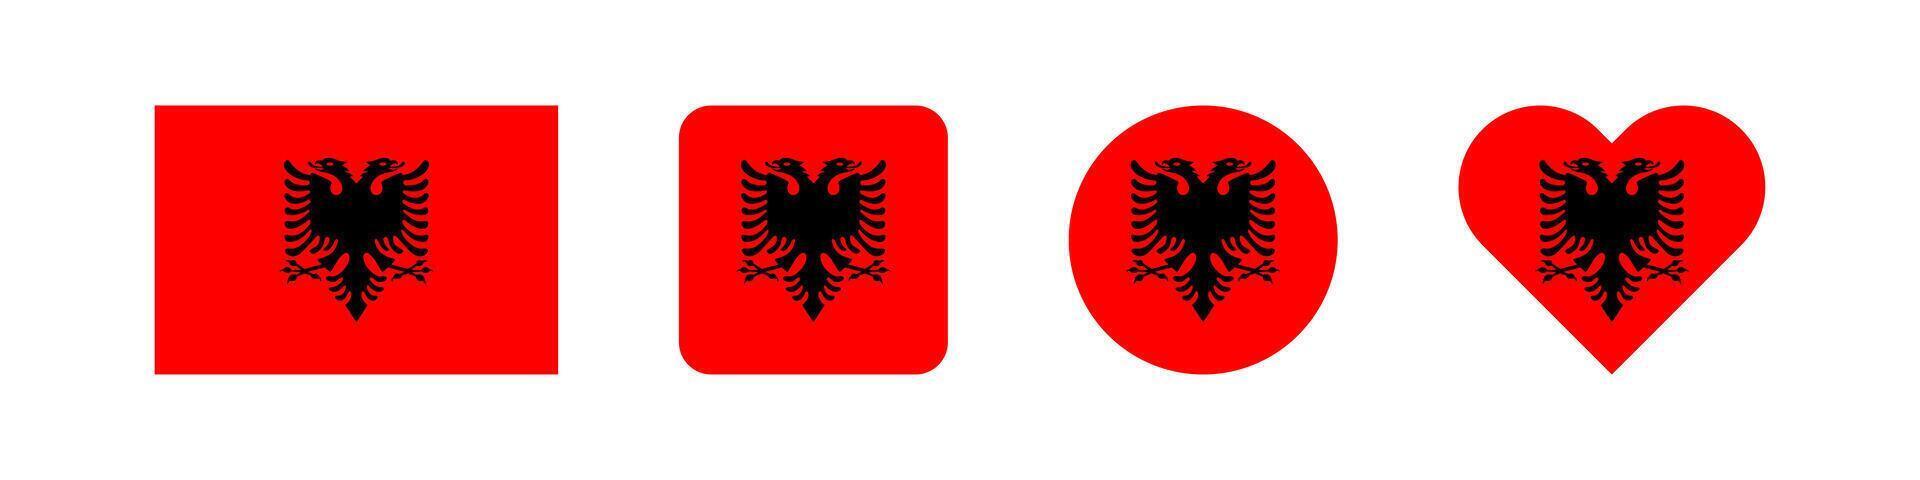 Albania nazione bandiera. albanese nazionale emblema. Europa nazione striscione. vettore